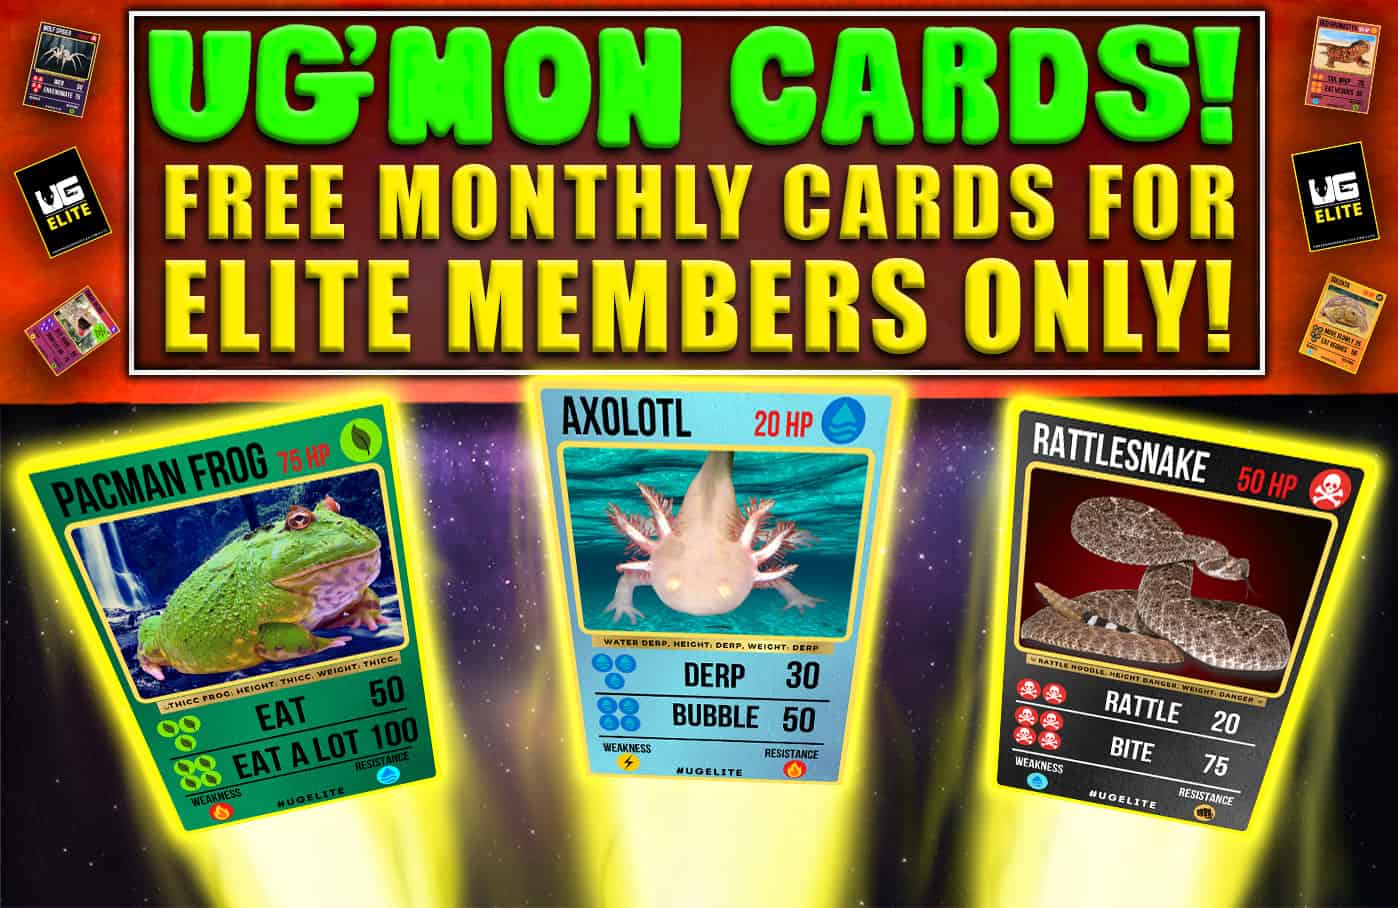 UGMon Cards - UG Elite Members Only